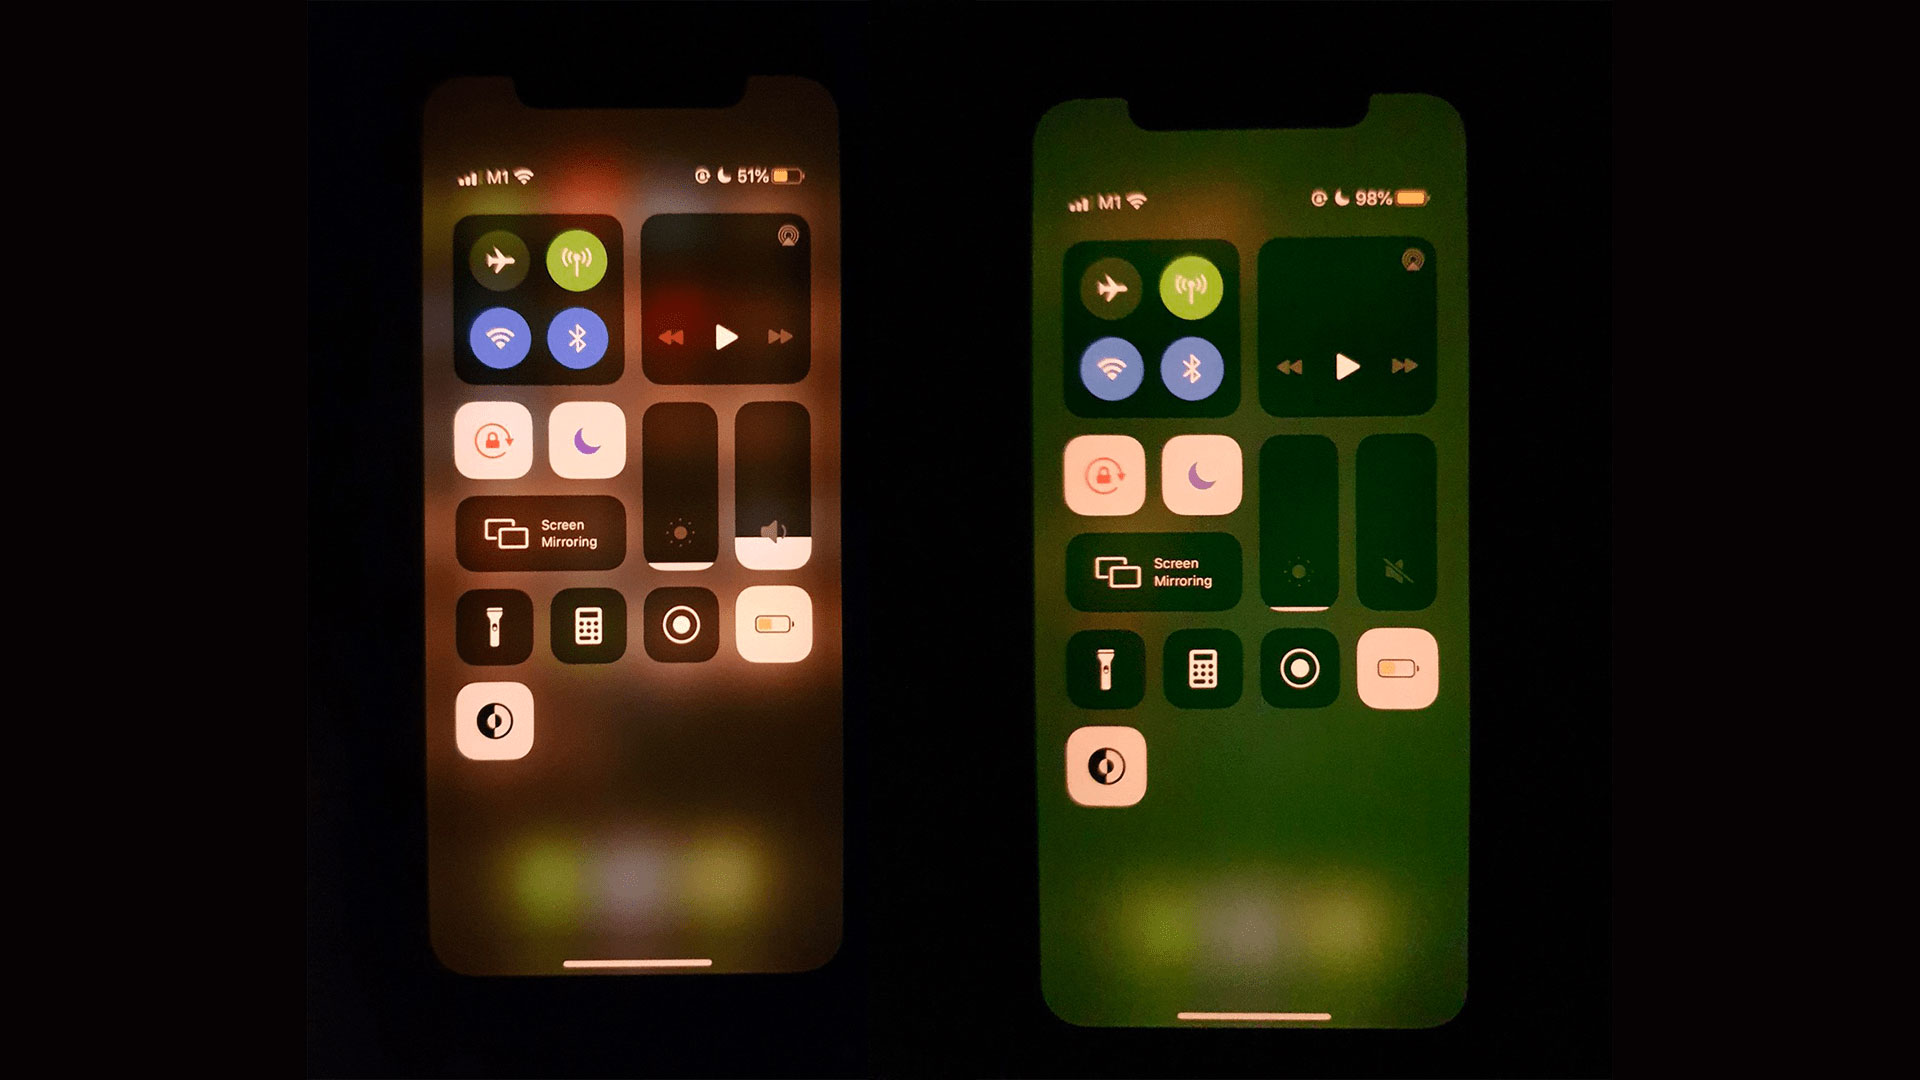 Este fallo hace que la pantalla de tu iPhone 11 cuente con tonalidades  verdes, y no hay solución | Computer Hoy